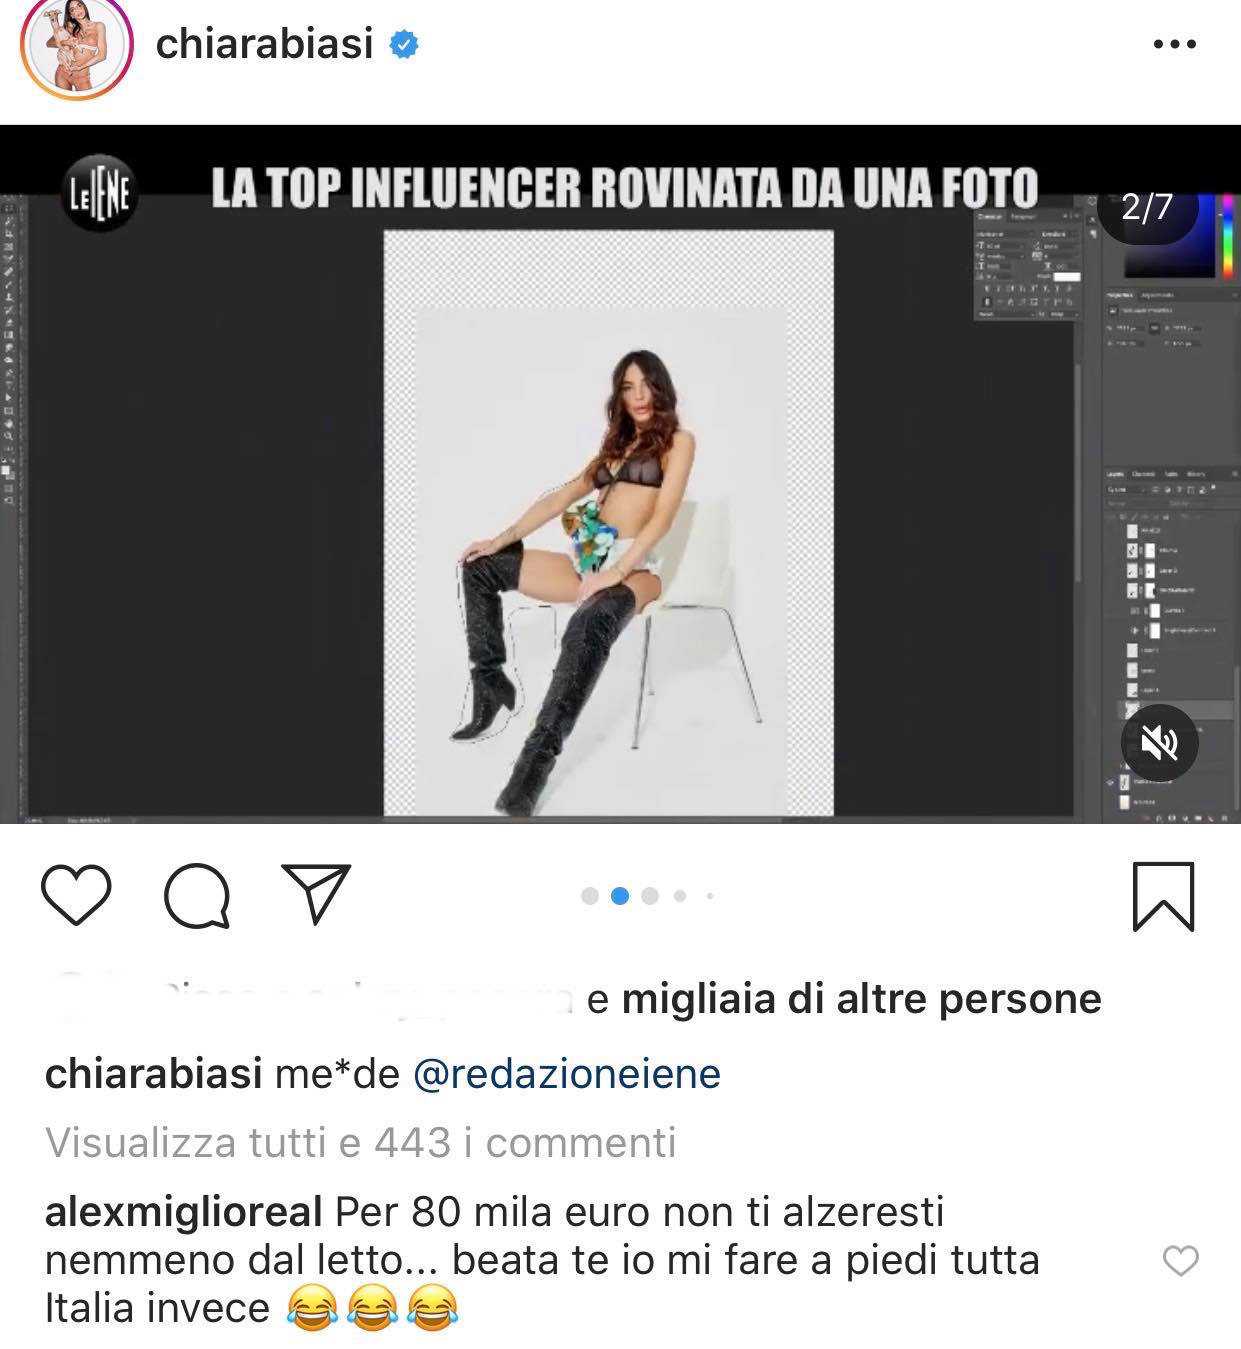 Chiara Biasi Le iene scherzo